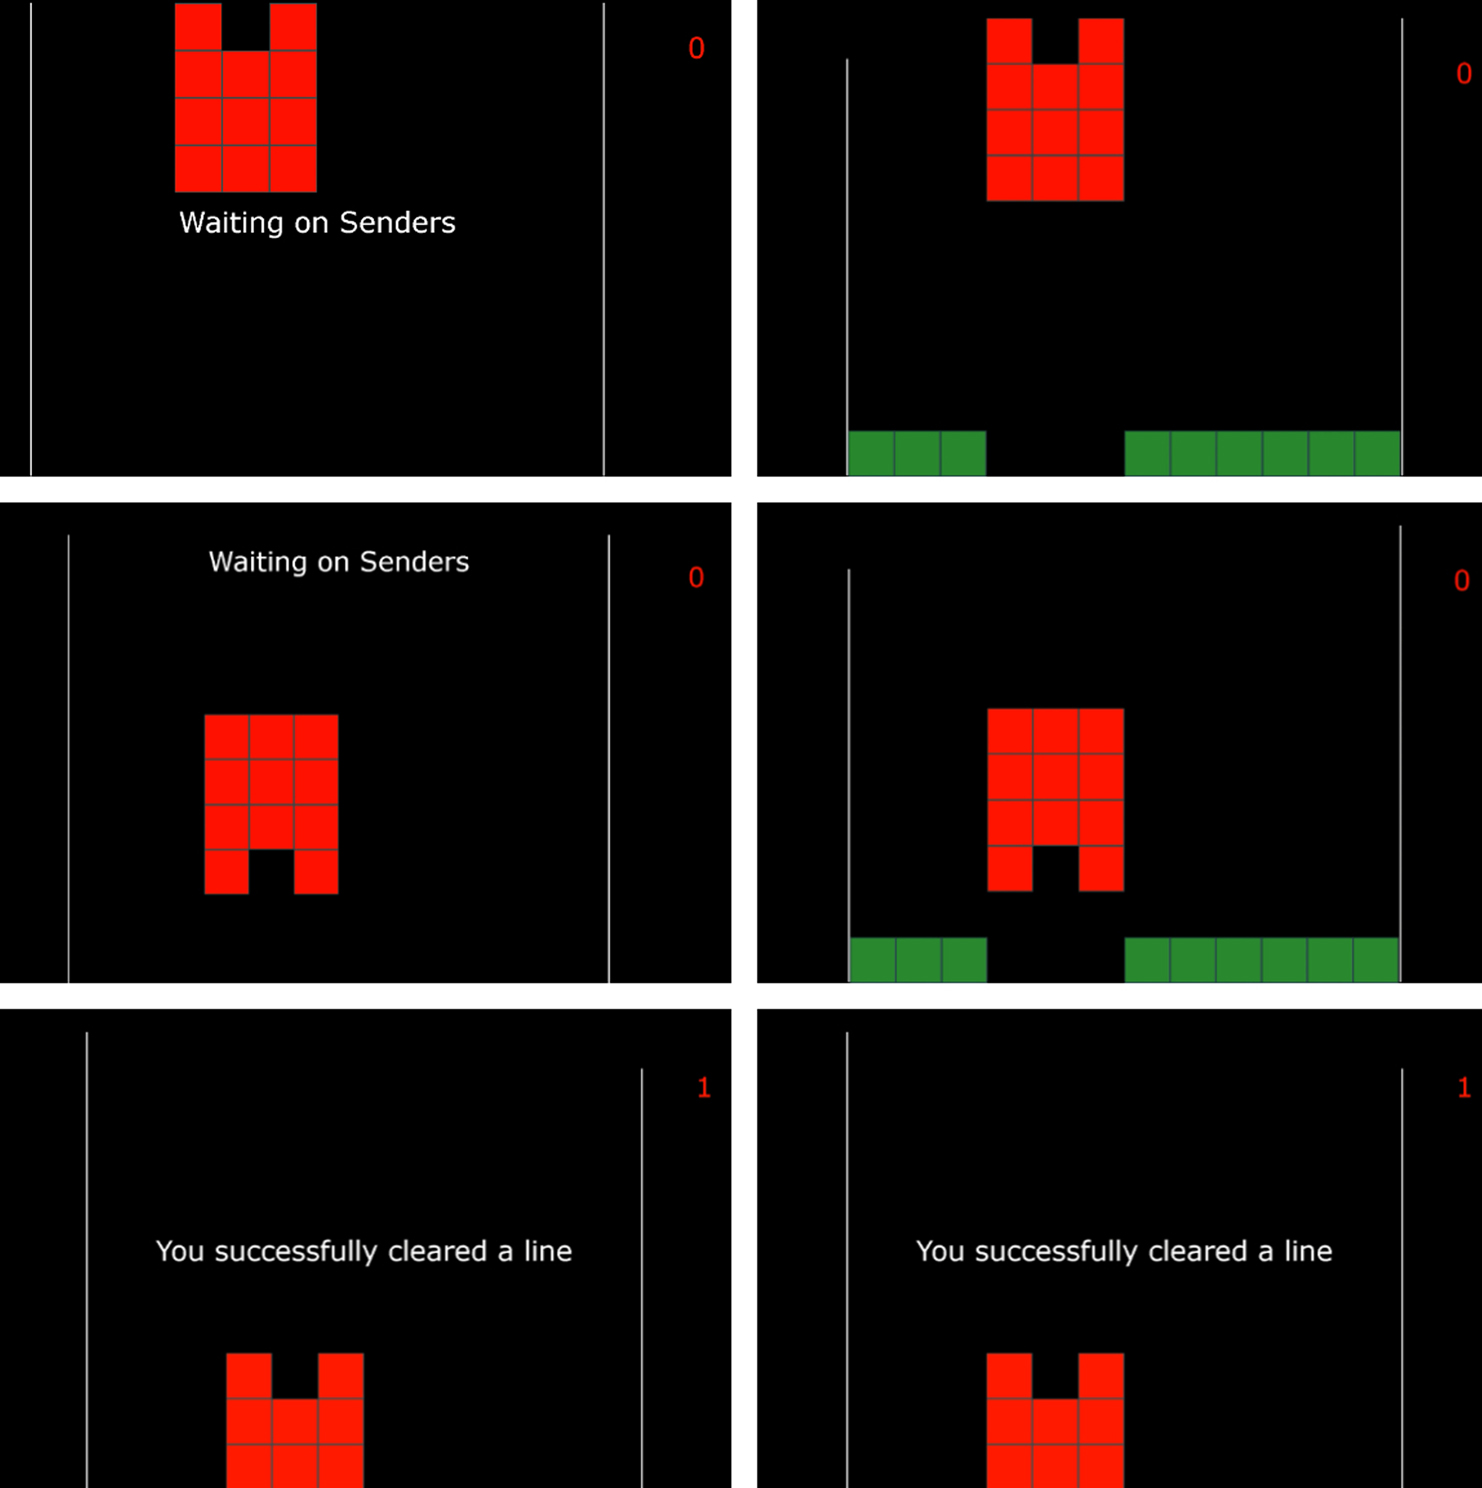 ゲームの一例。受信者となるプレイヤーは左側の画面のみが見えており、送信者となる2人は操作はできませんが左側の画面が見えている。